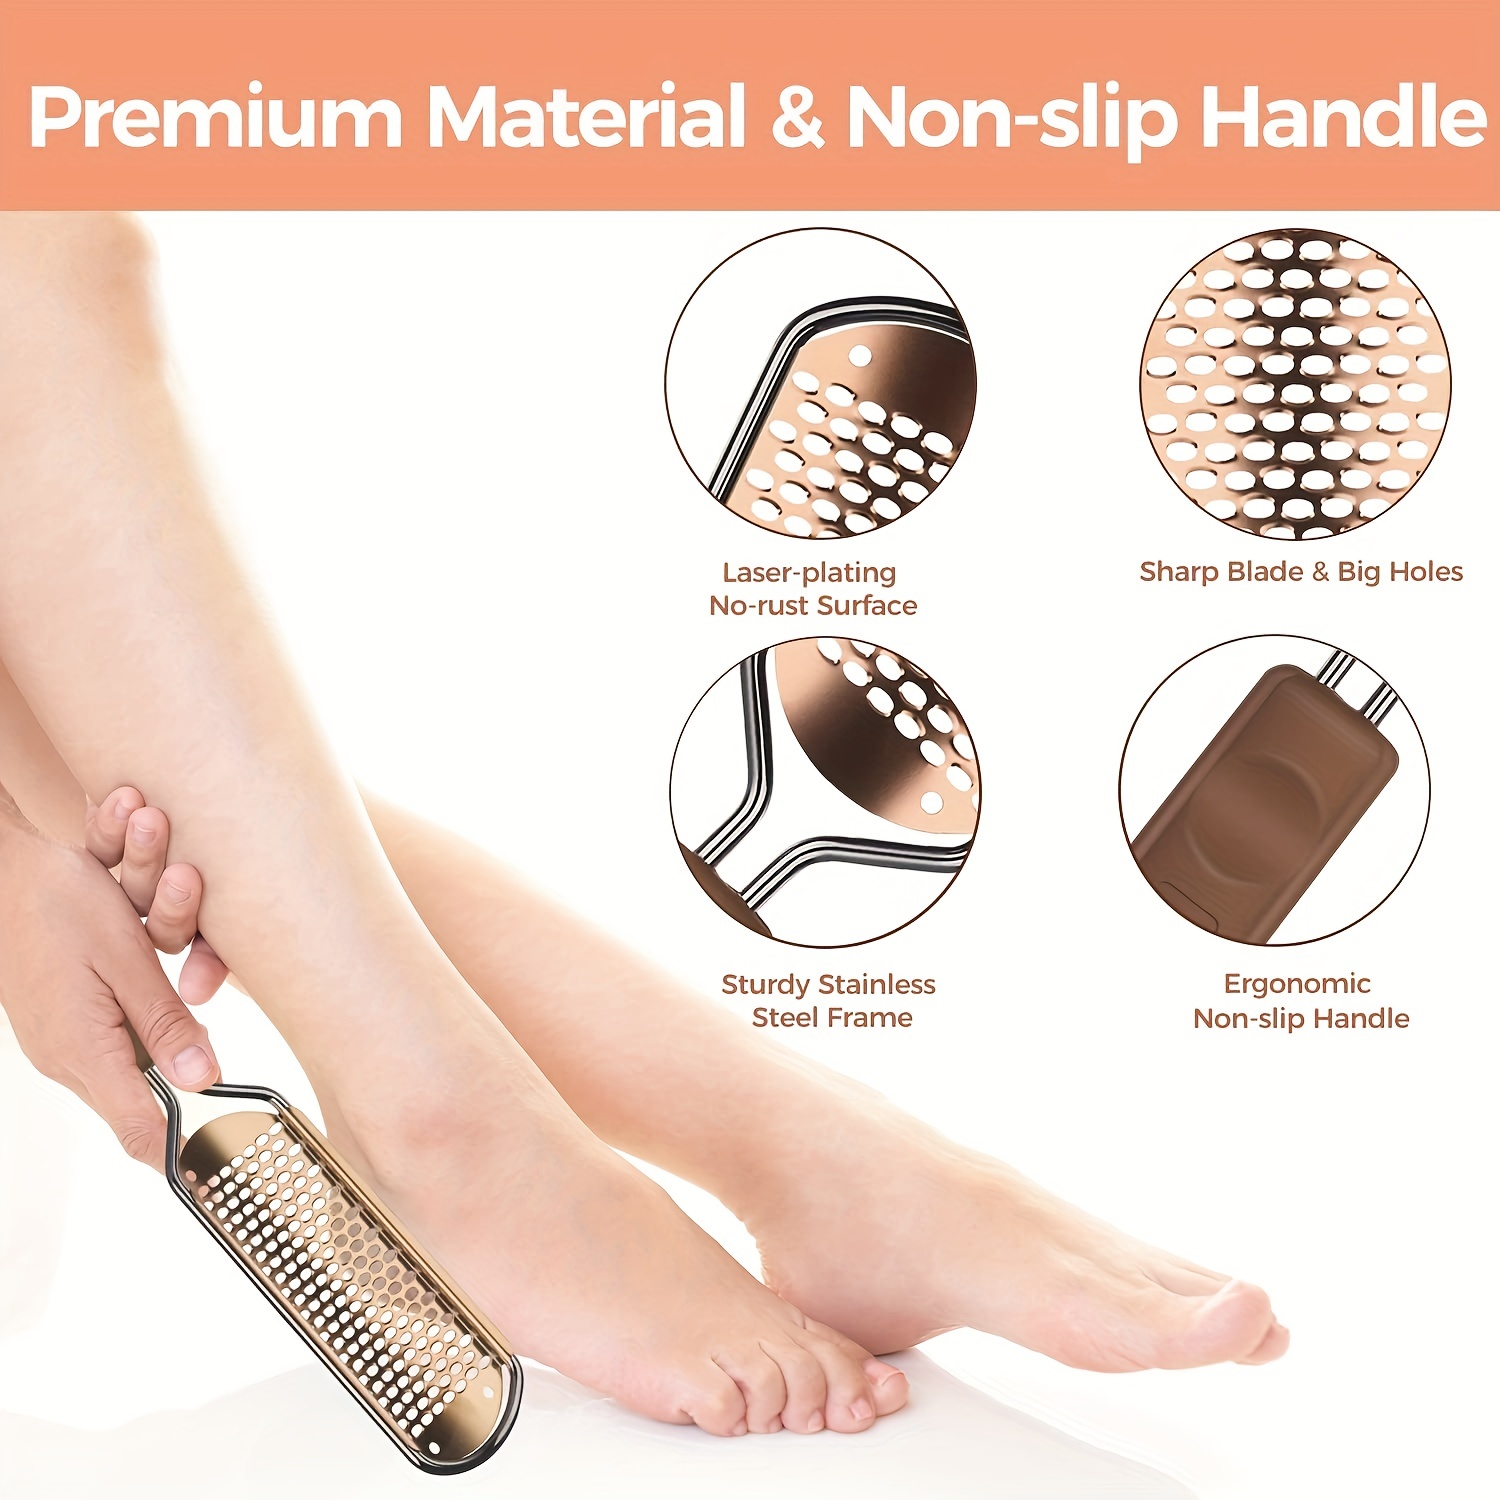 Foot Scraper Pedicure Supplies for Dead Skin Heel File Like Grater